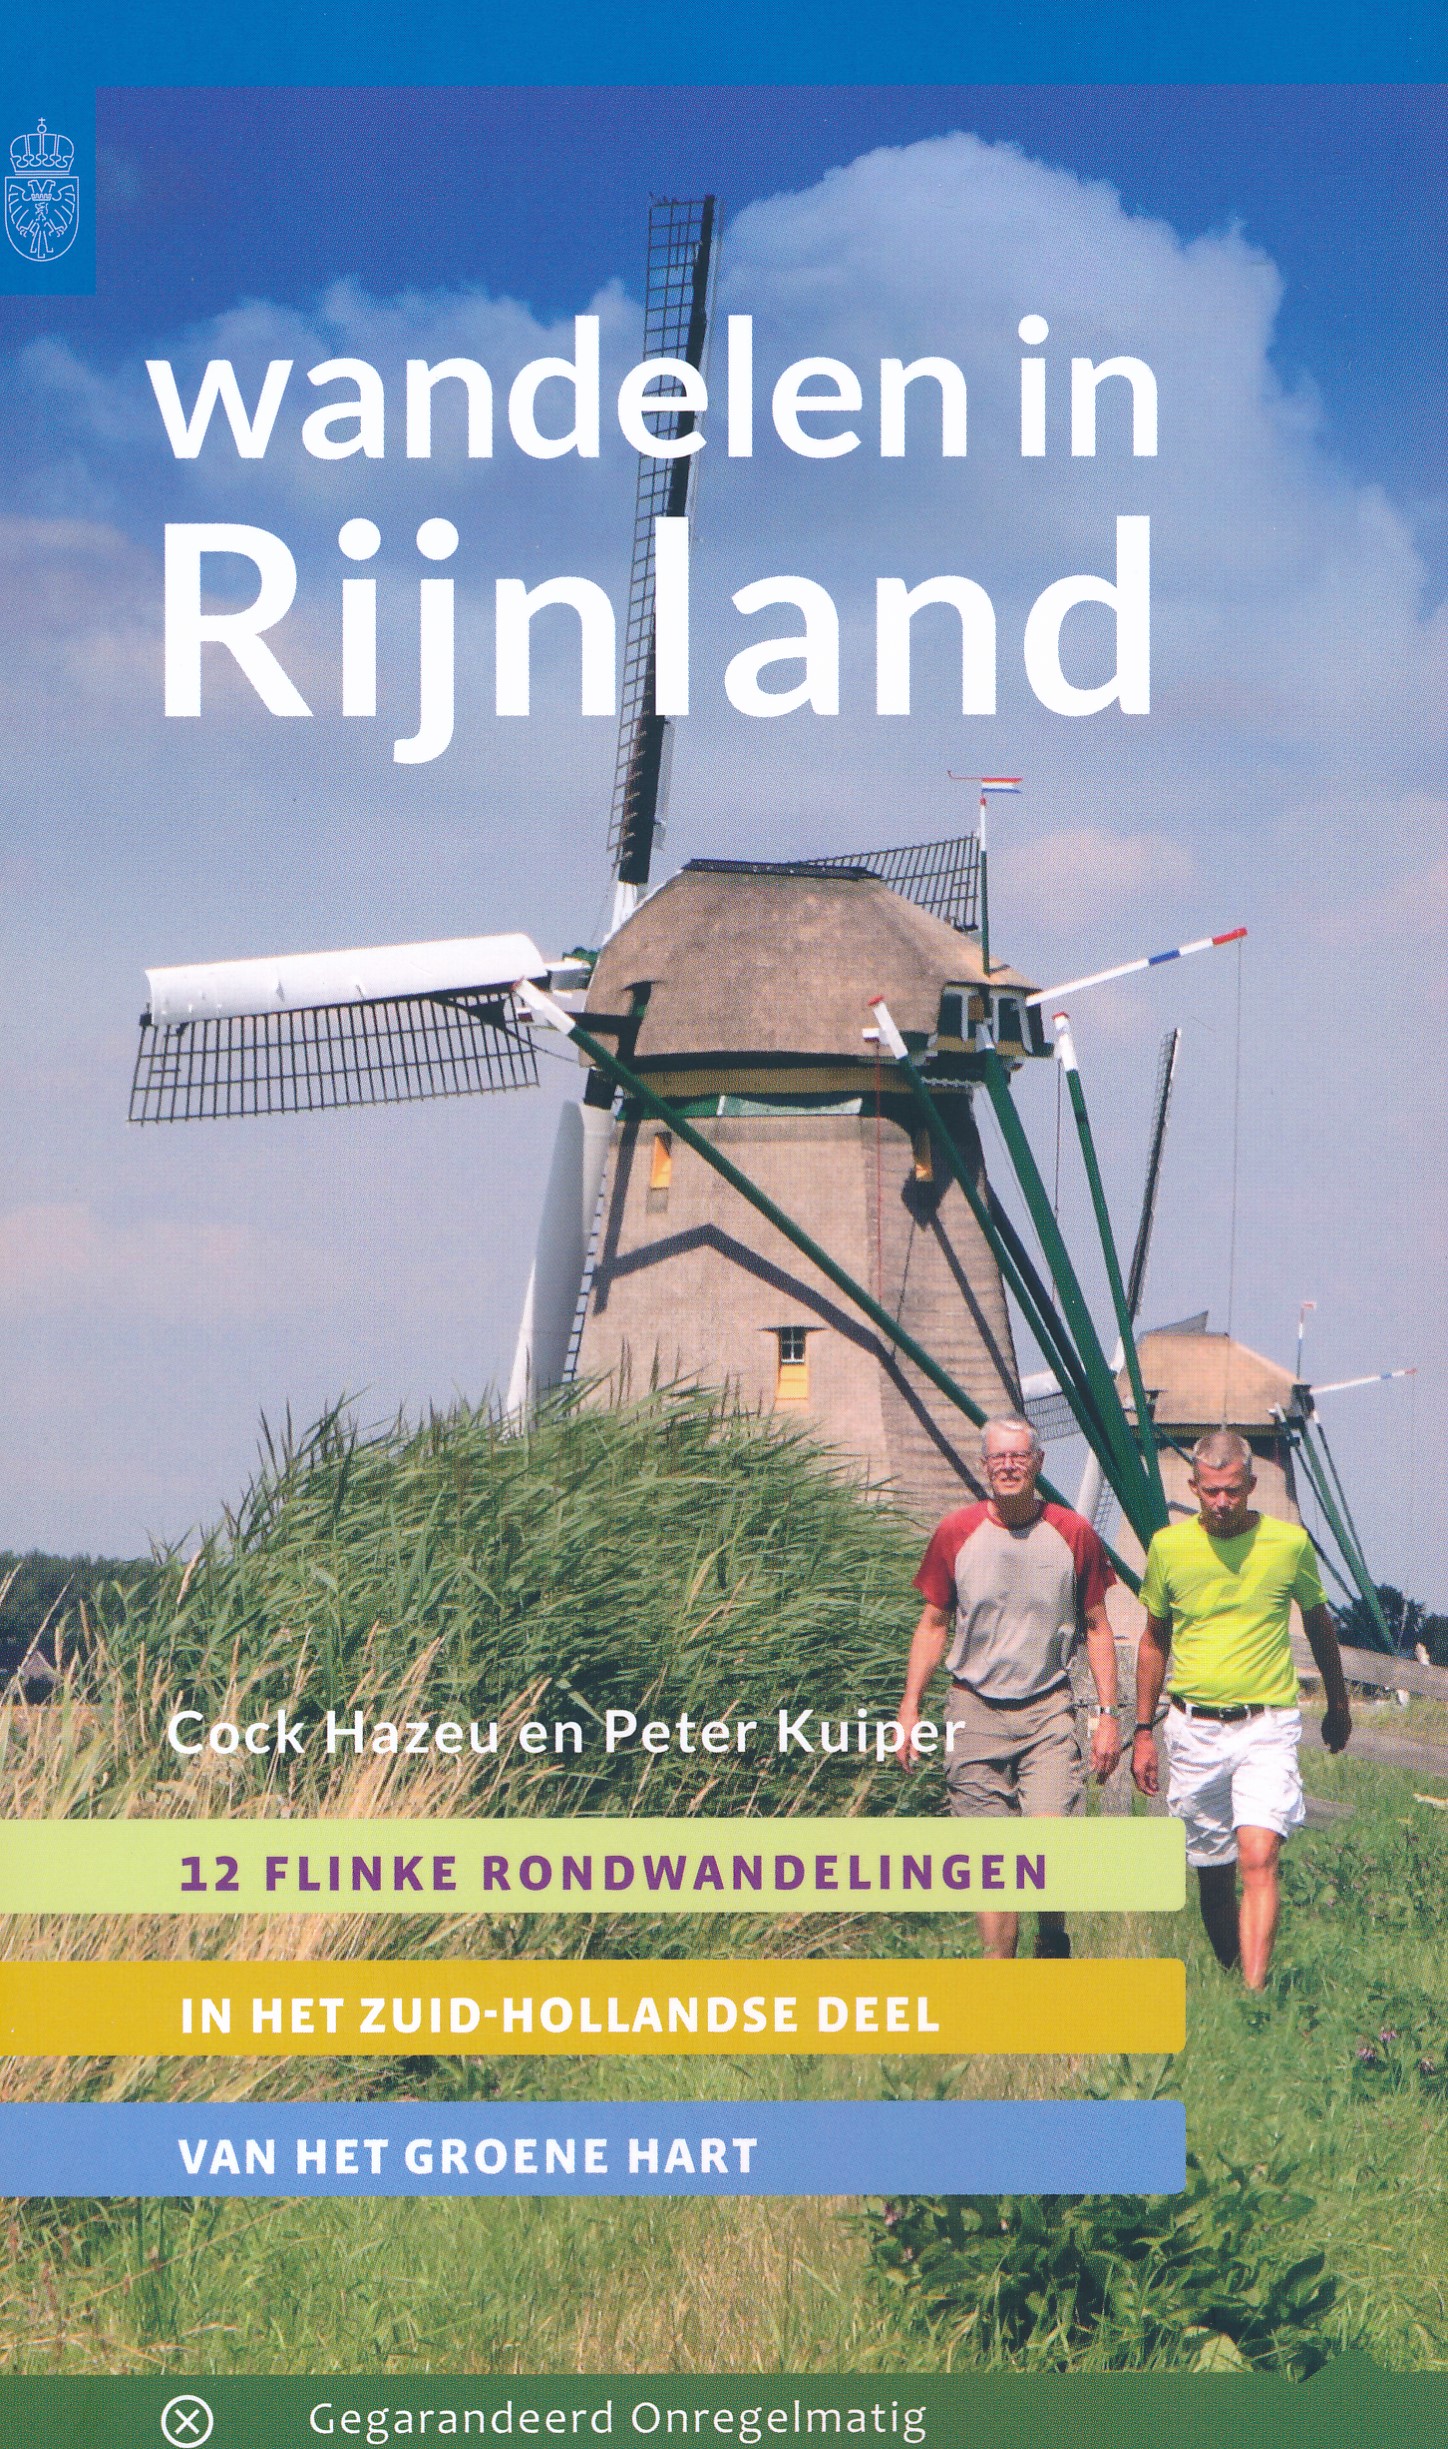 Online bestellen: Wandelgids Wandelen in Rijnland | Gegarandeerd Onregelmatig